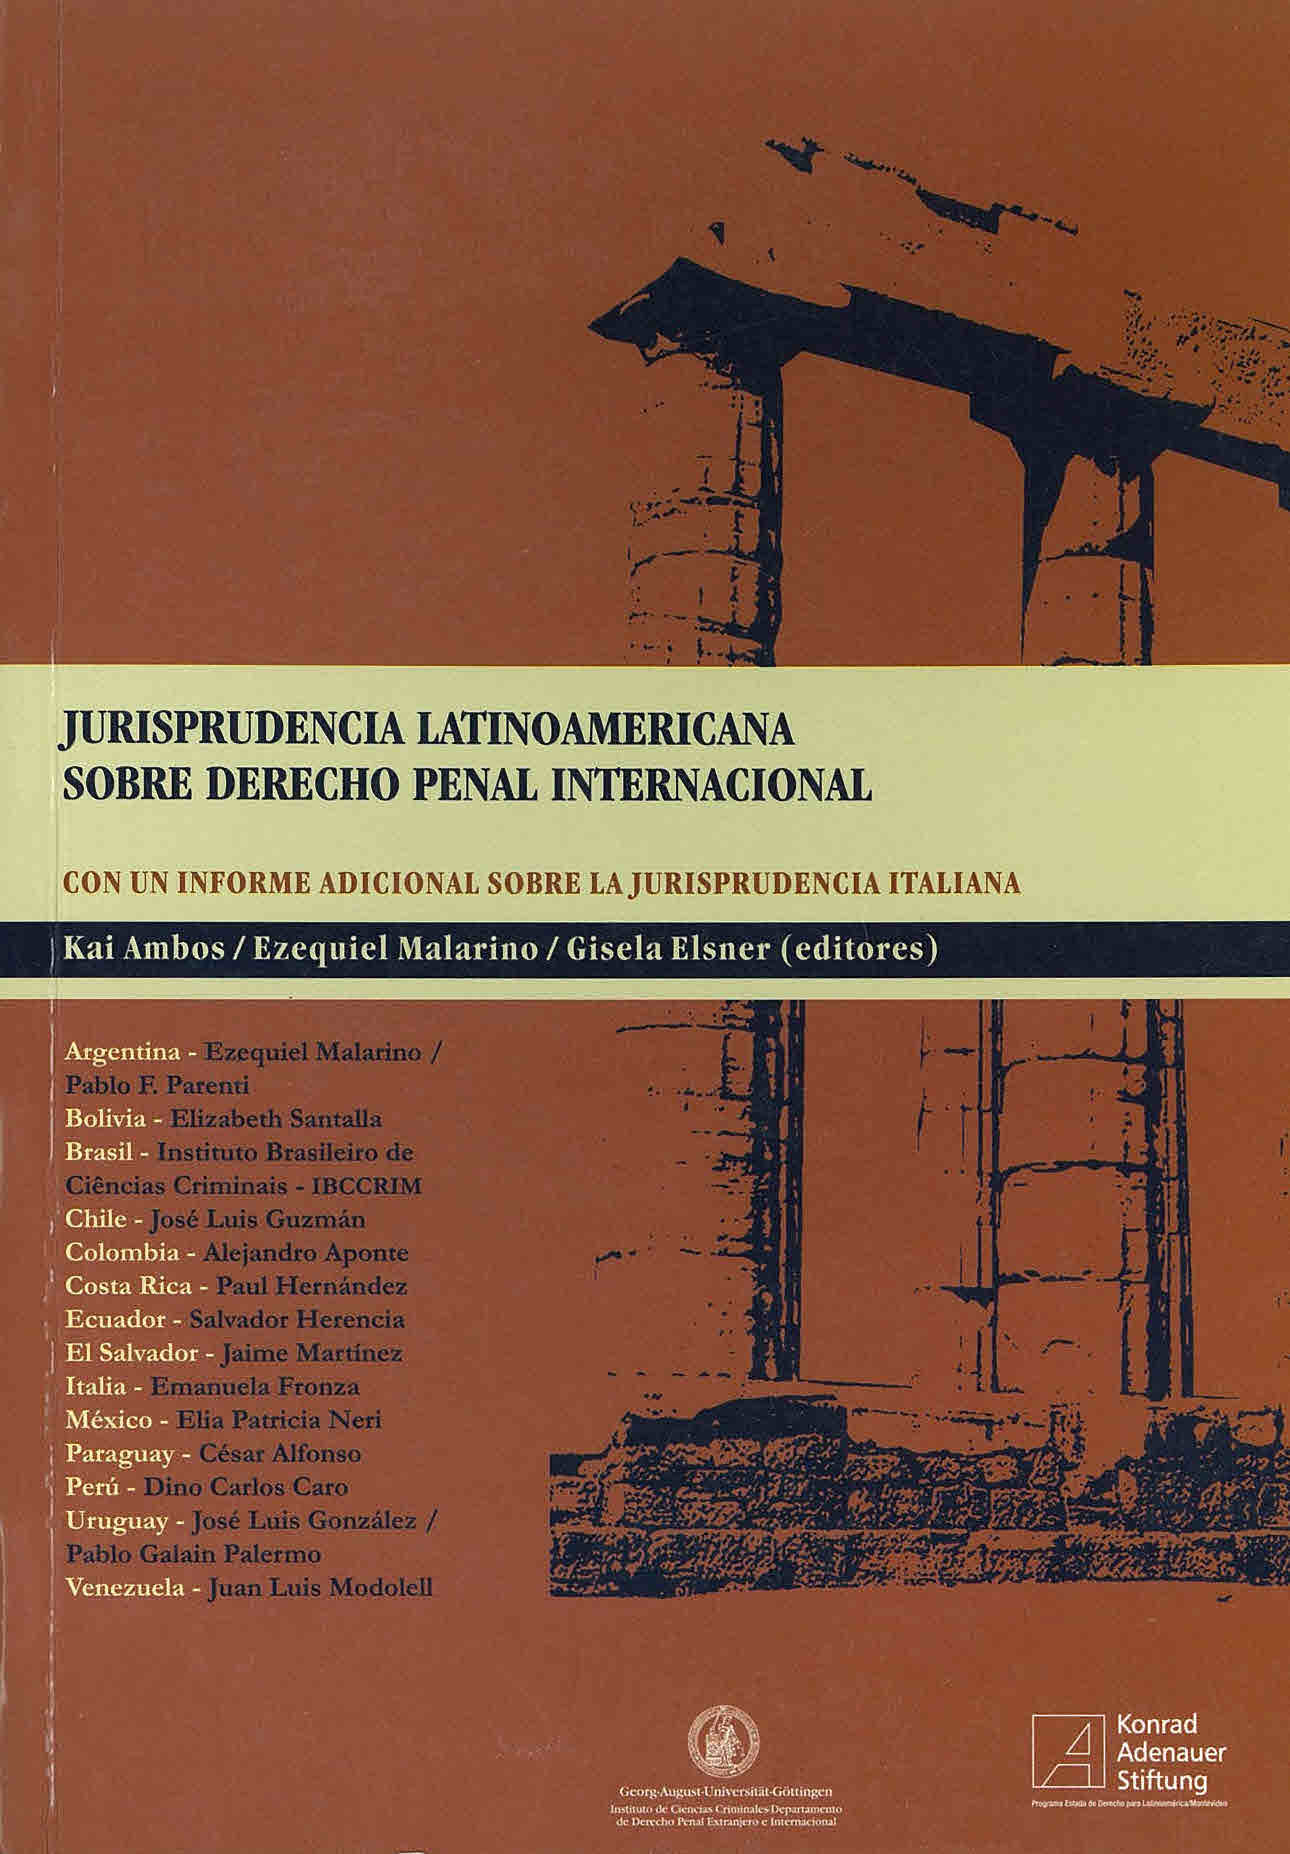 Jurisprudencia latinoamericana sobre derecho penal internacional. Con un informe adicional sobre la jurisprudencia italiana